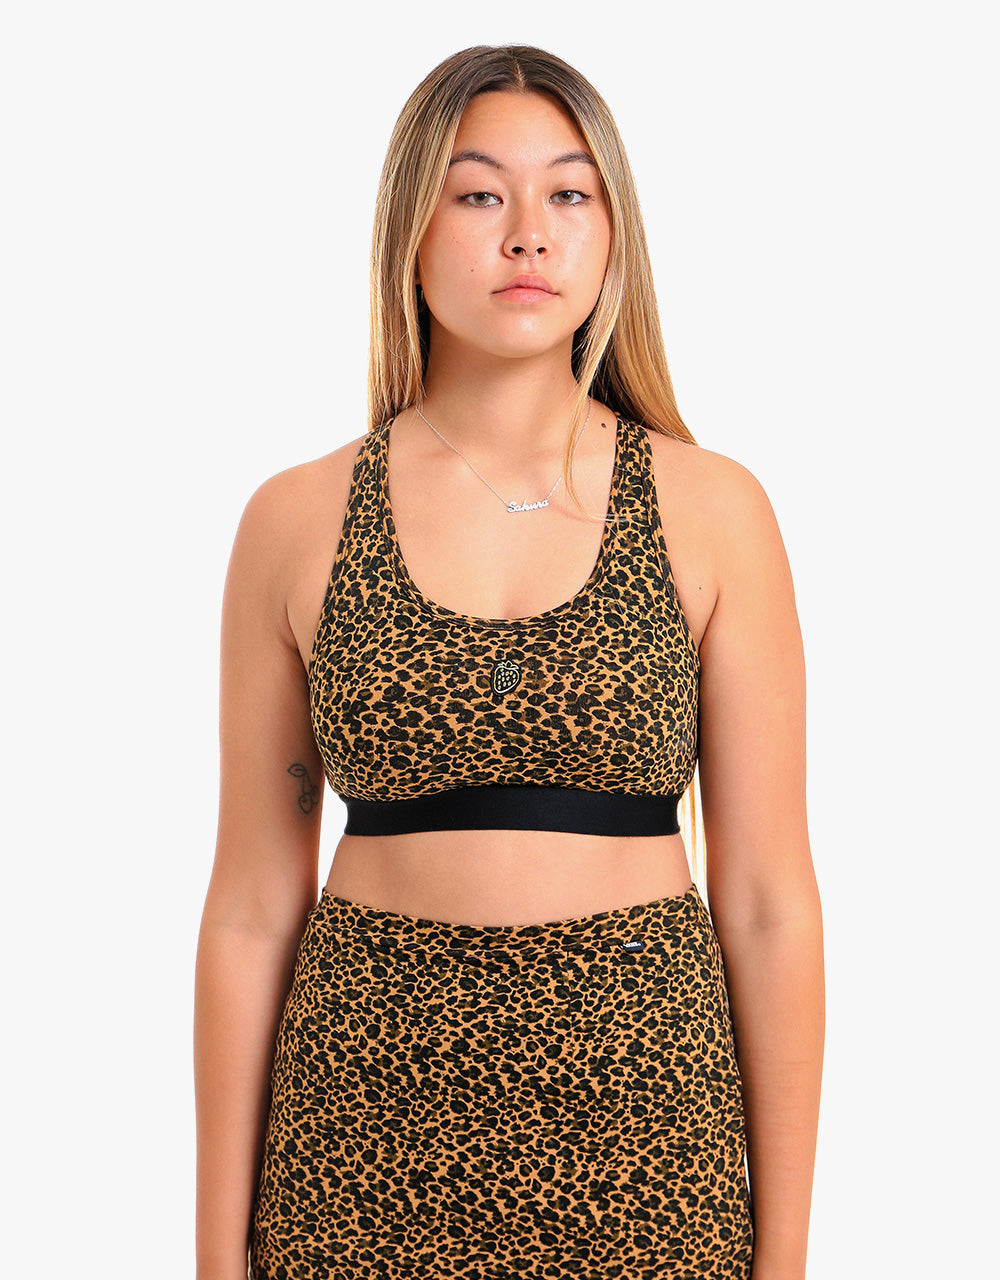 Vans Womens Strauberry Leopard Bralette - Cher Cheetah